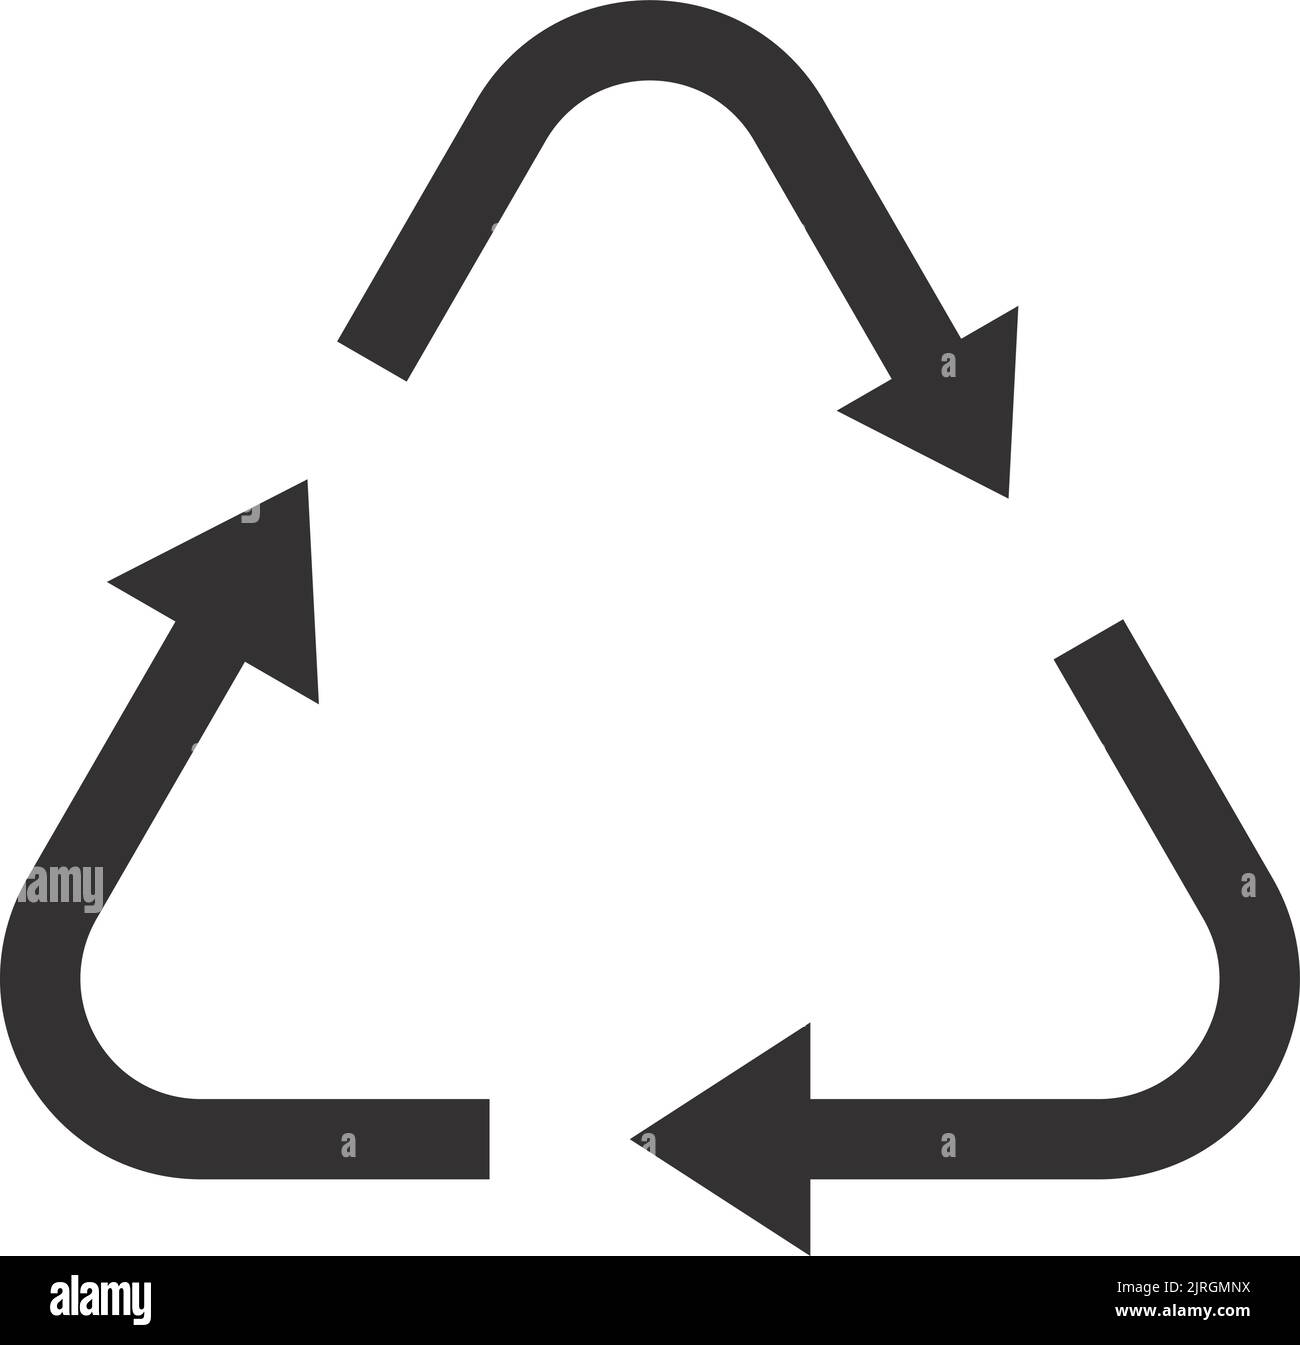 Segnale ECO. Icona nera del triangolo freccia. Ambiente di sicurezza Illustrazione Vettoriale